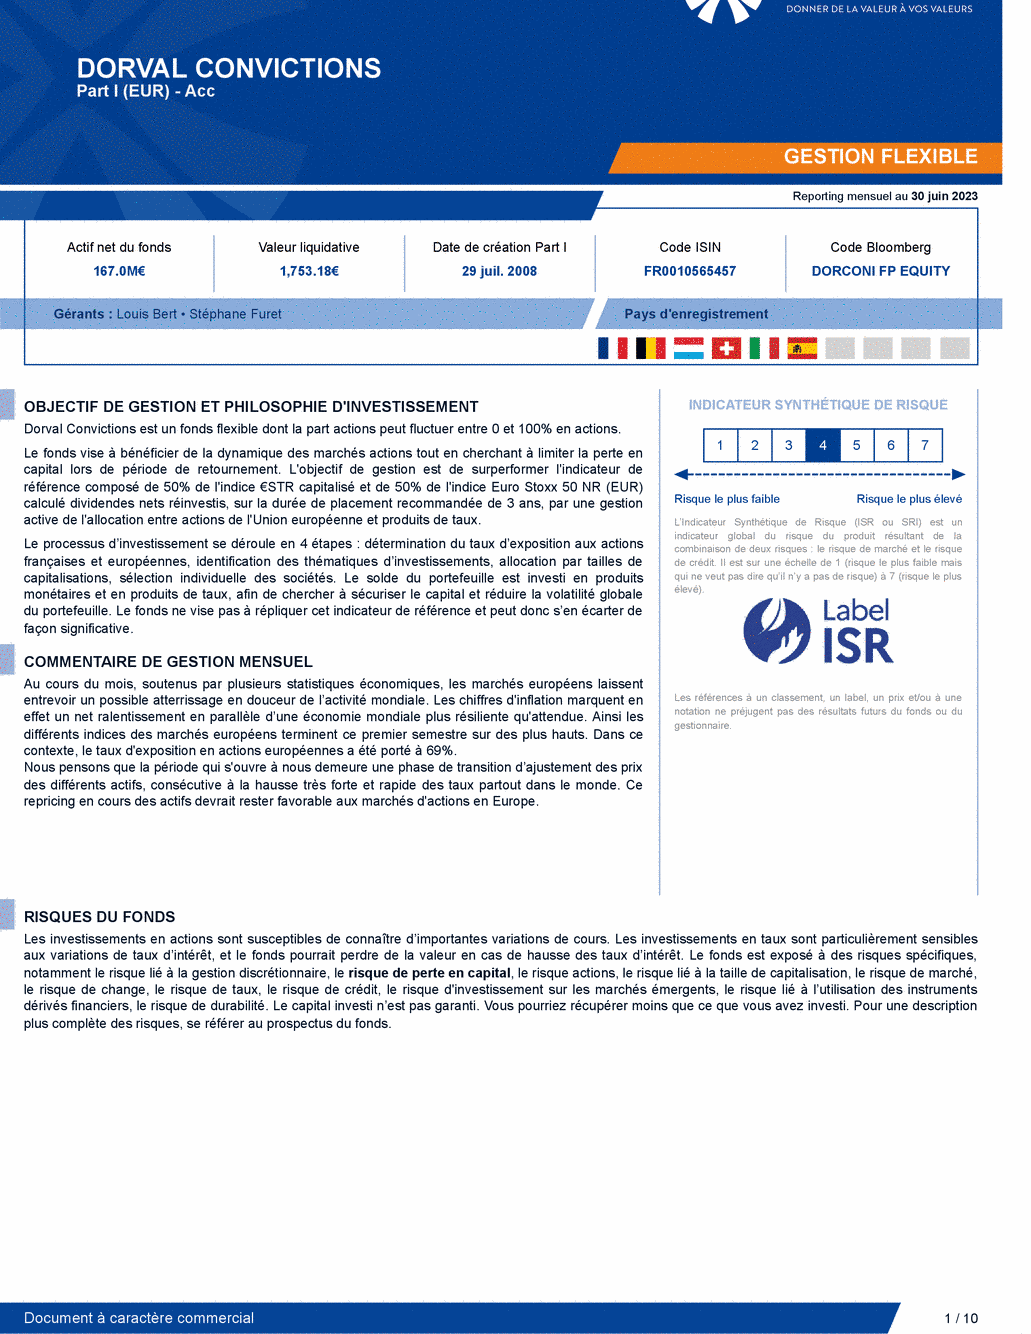 Reporting DORVAL CONVICTIONS I - 30/06/2023 - Français